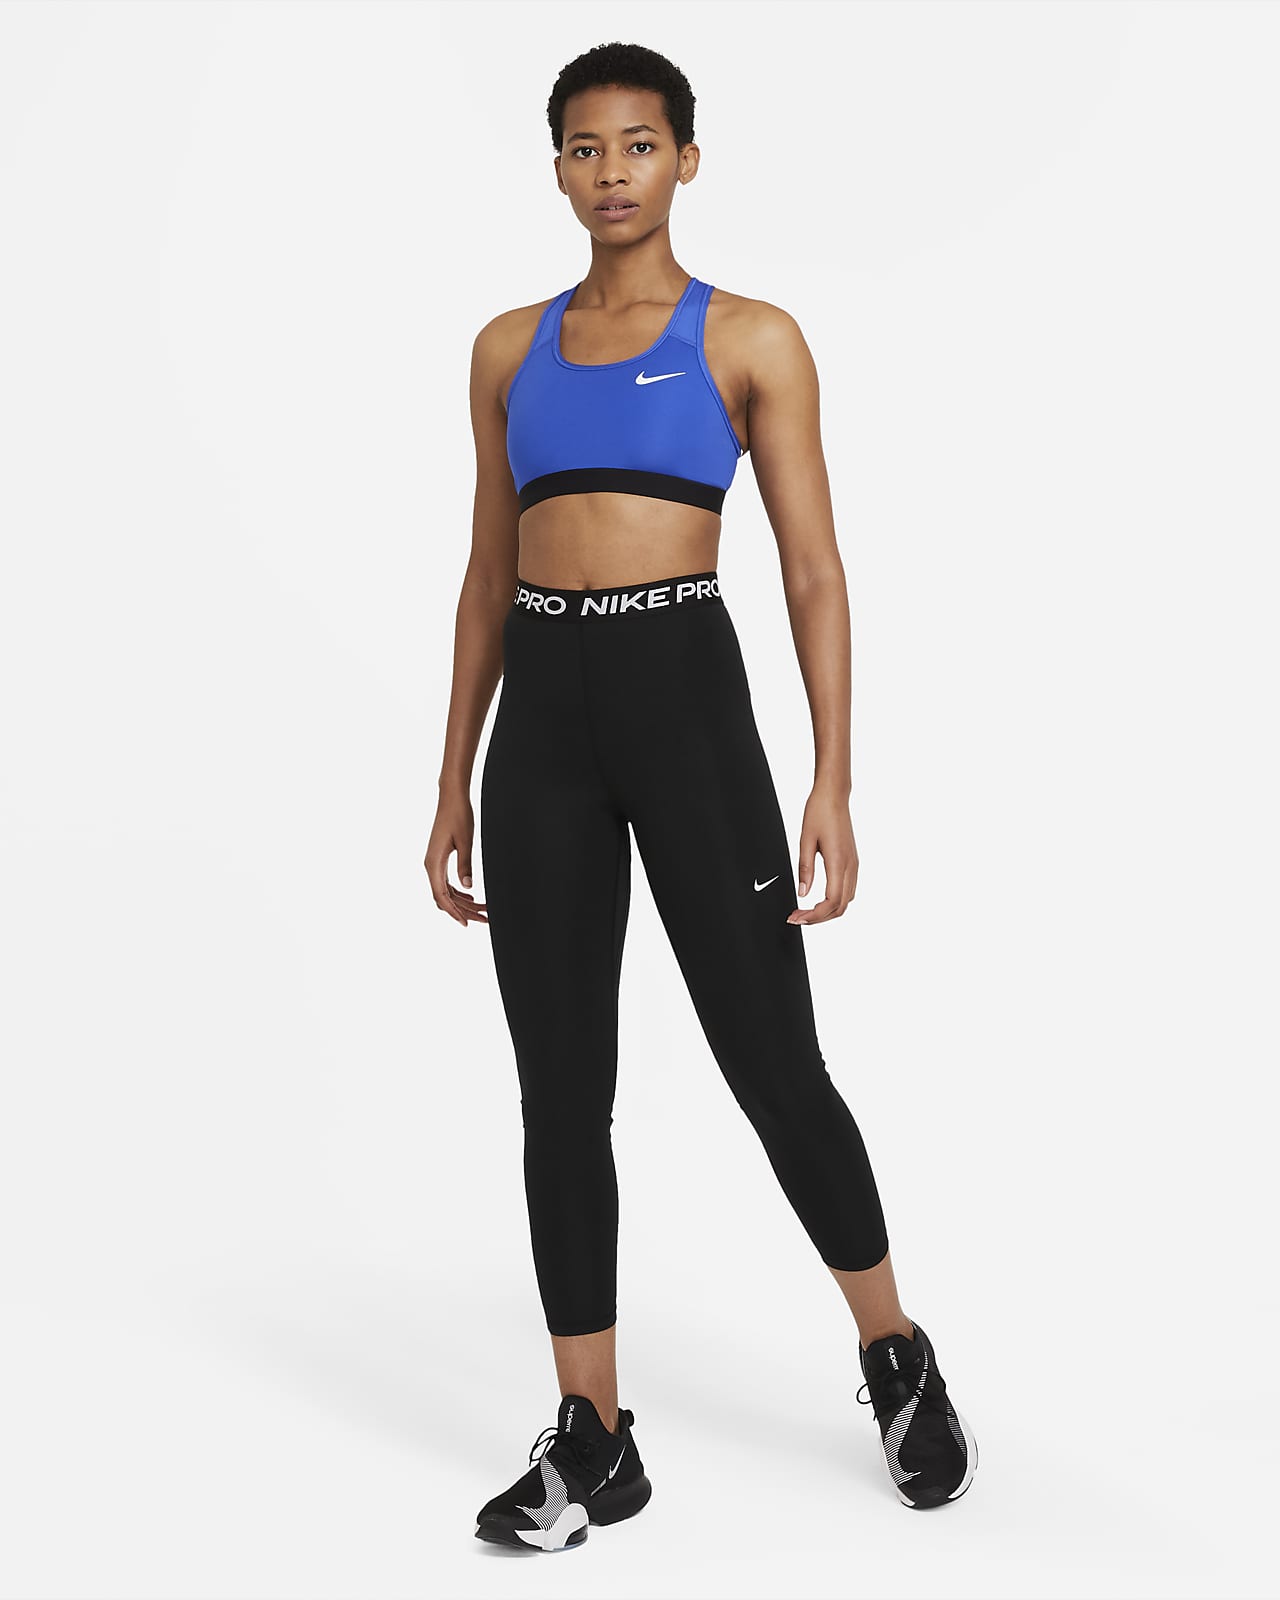 Nike Pro 365 Women's High-Rise 7/8 